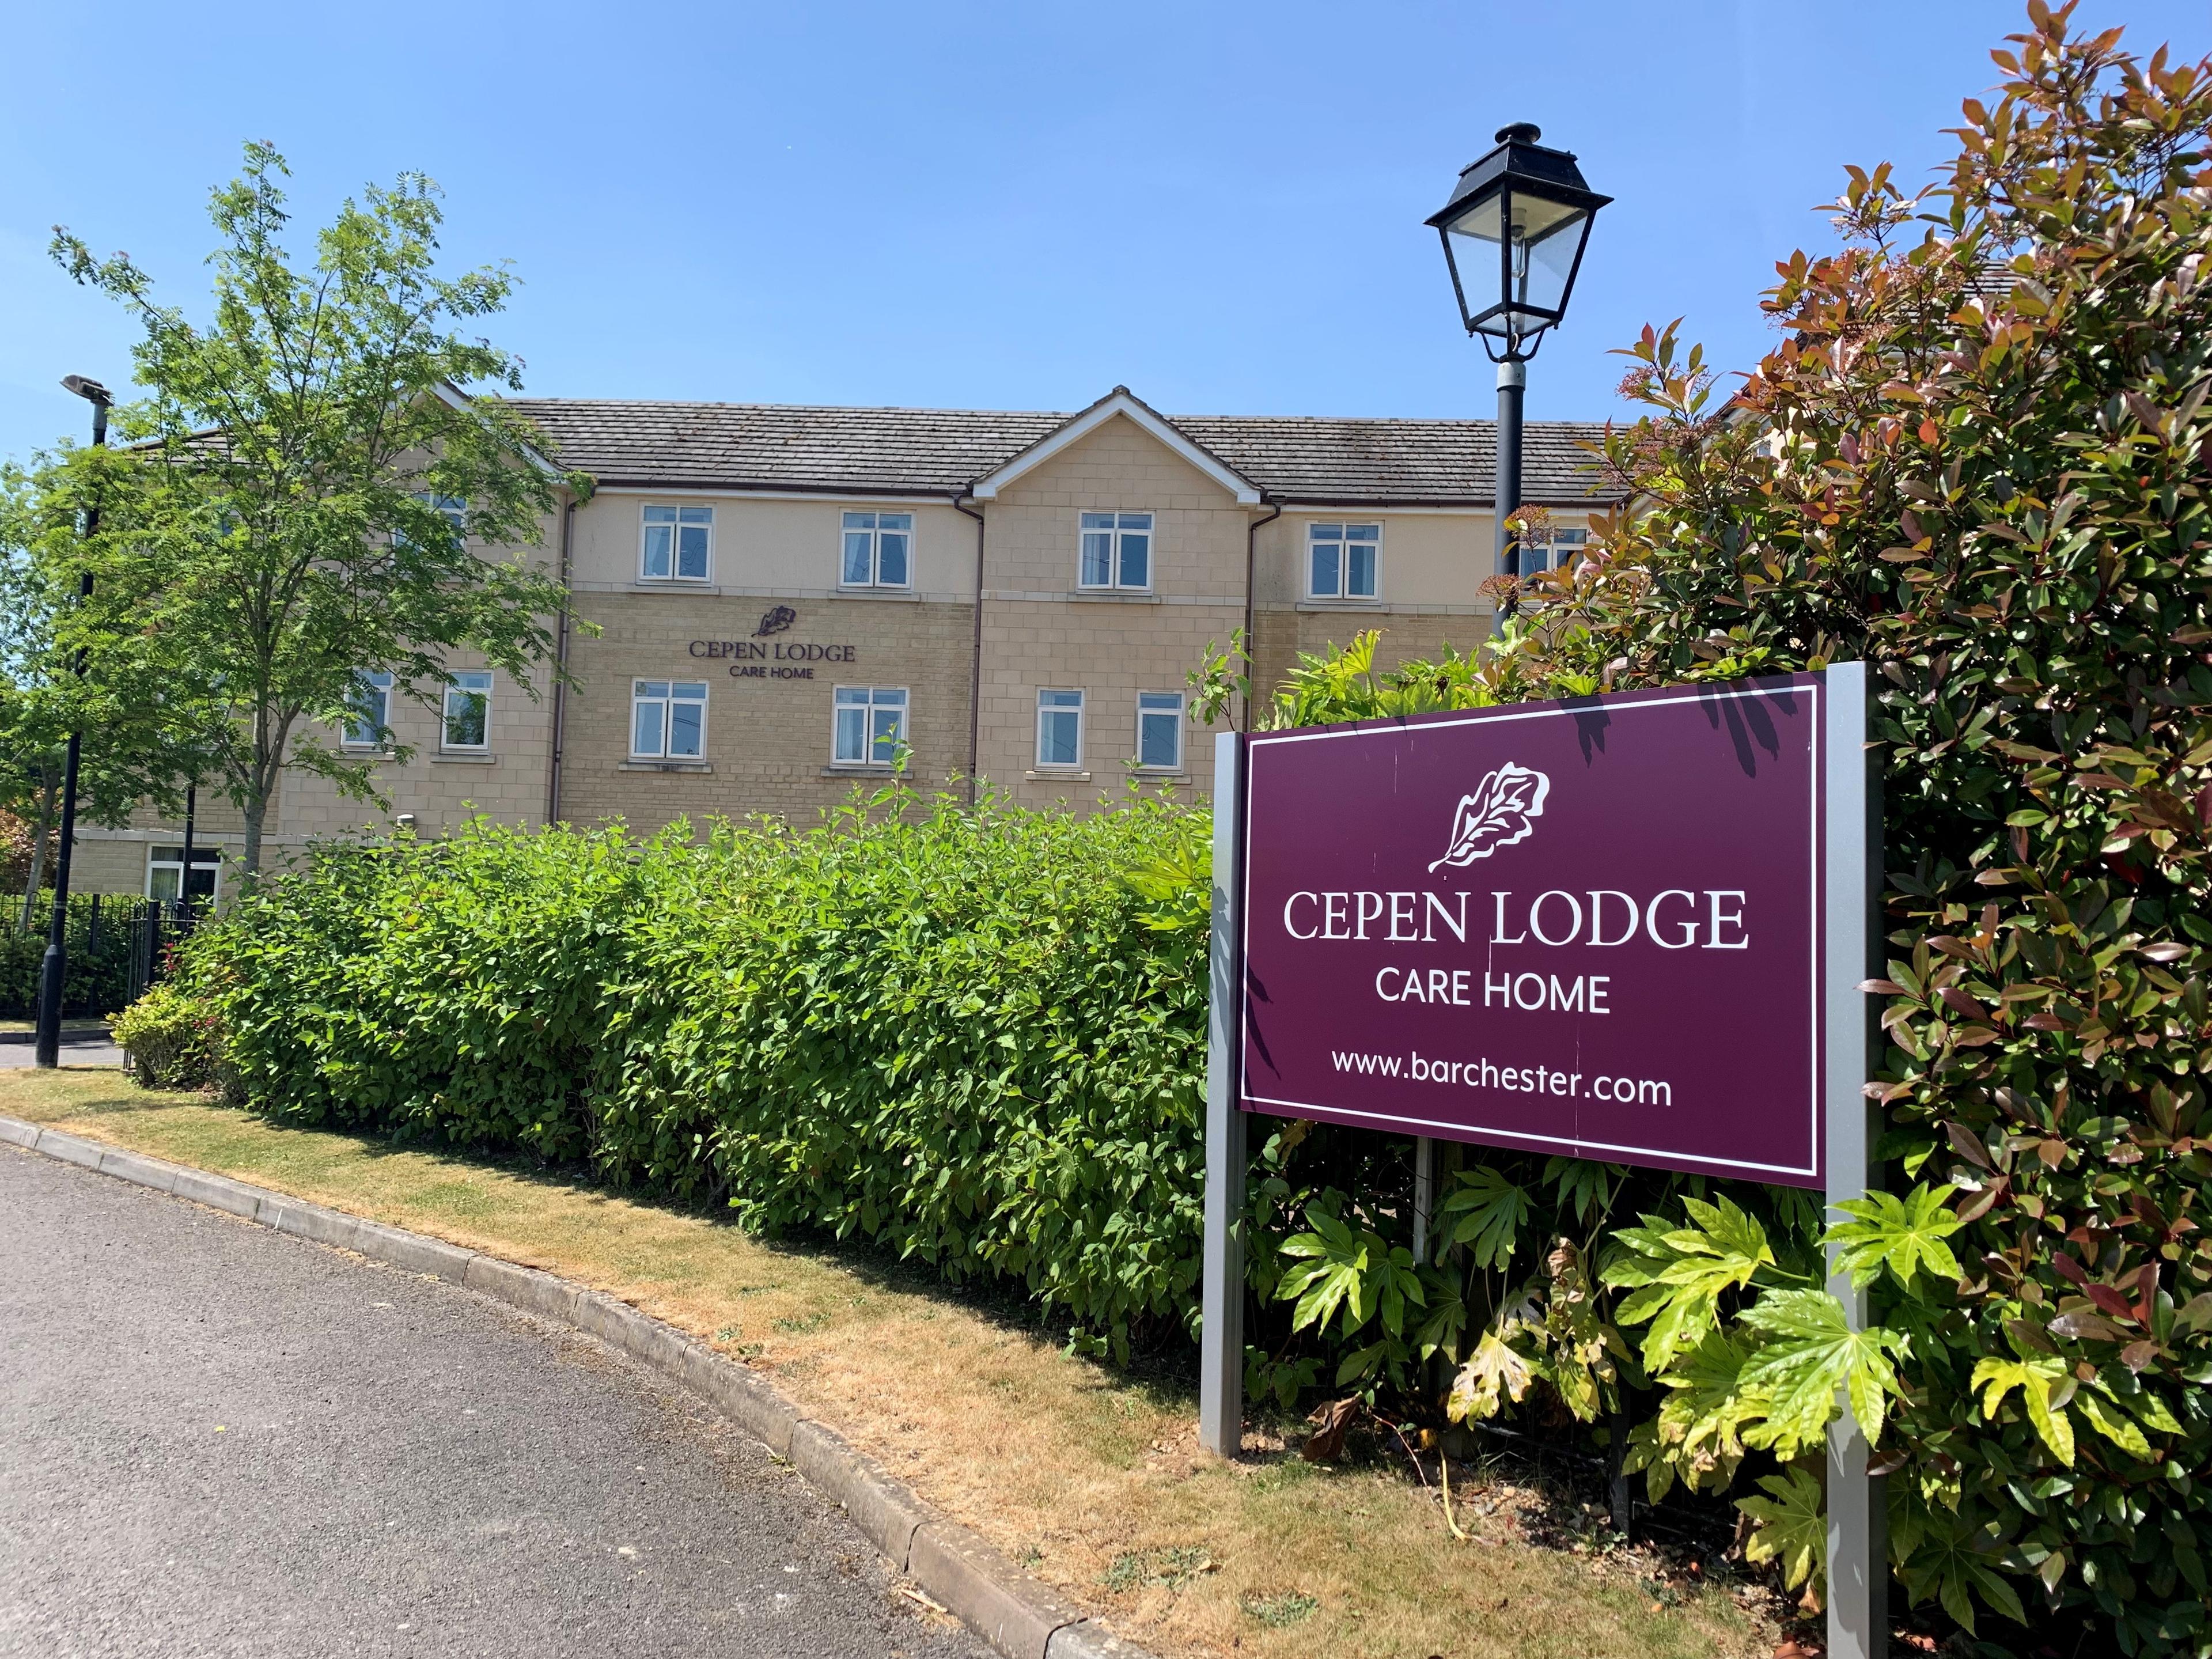 Cepen Lodge Care Home